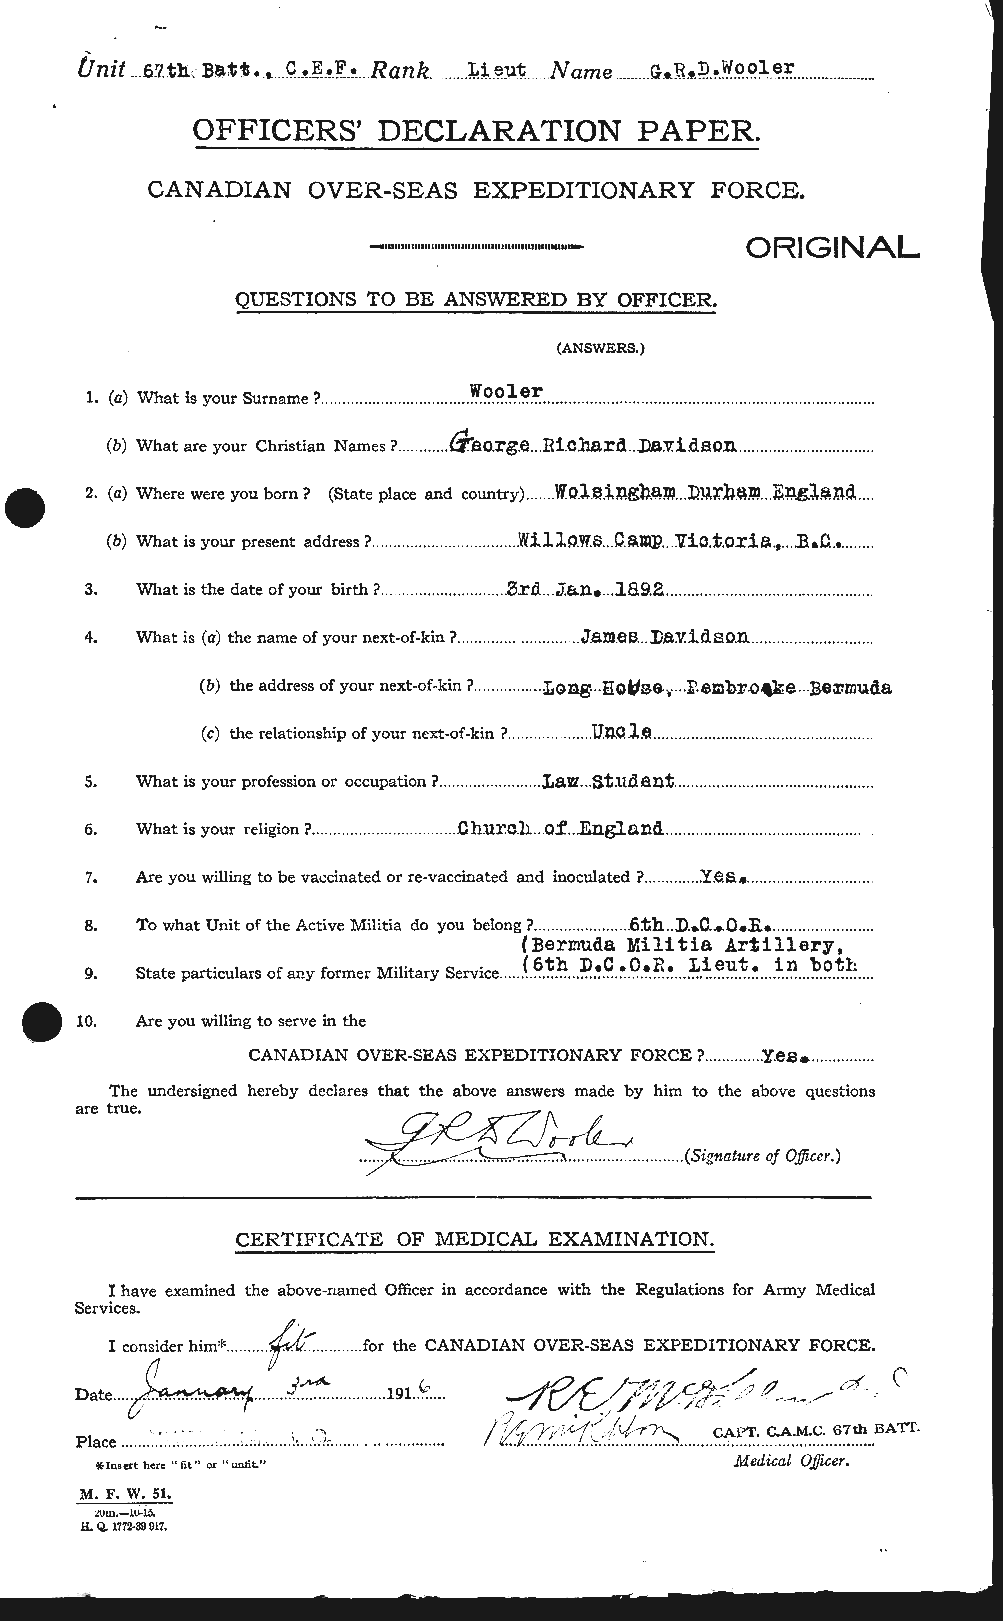 Dossiers du Personnel de la Première Guerre mondiale - CEC 685031a